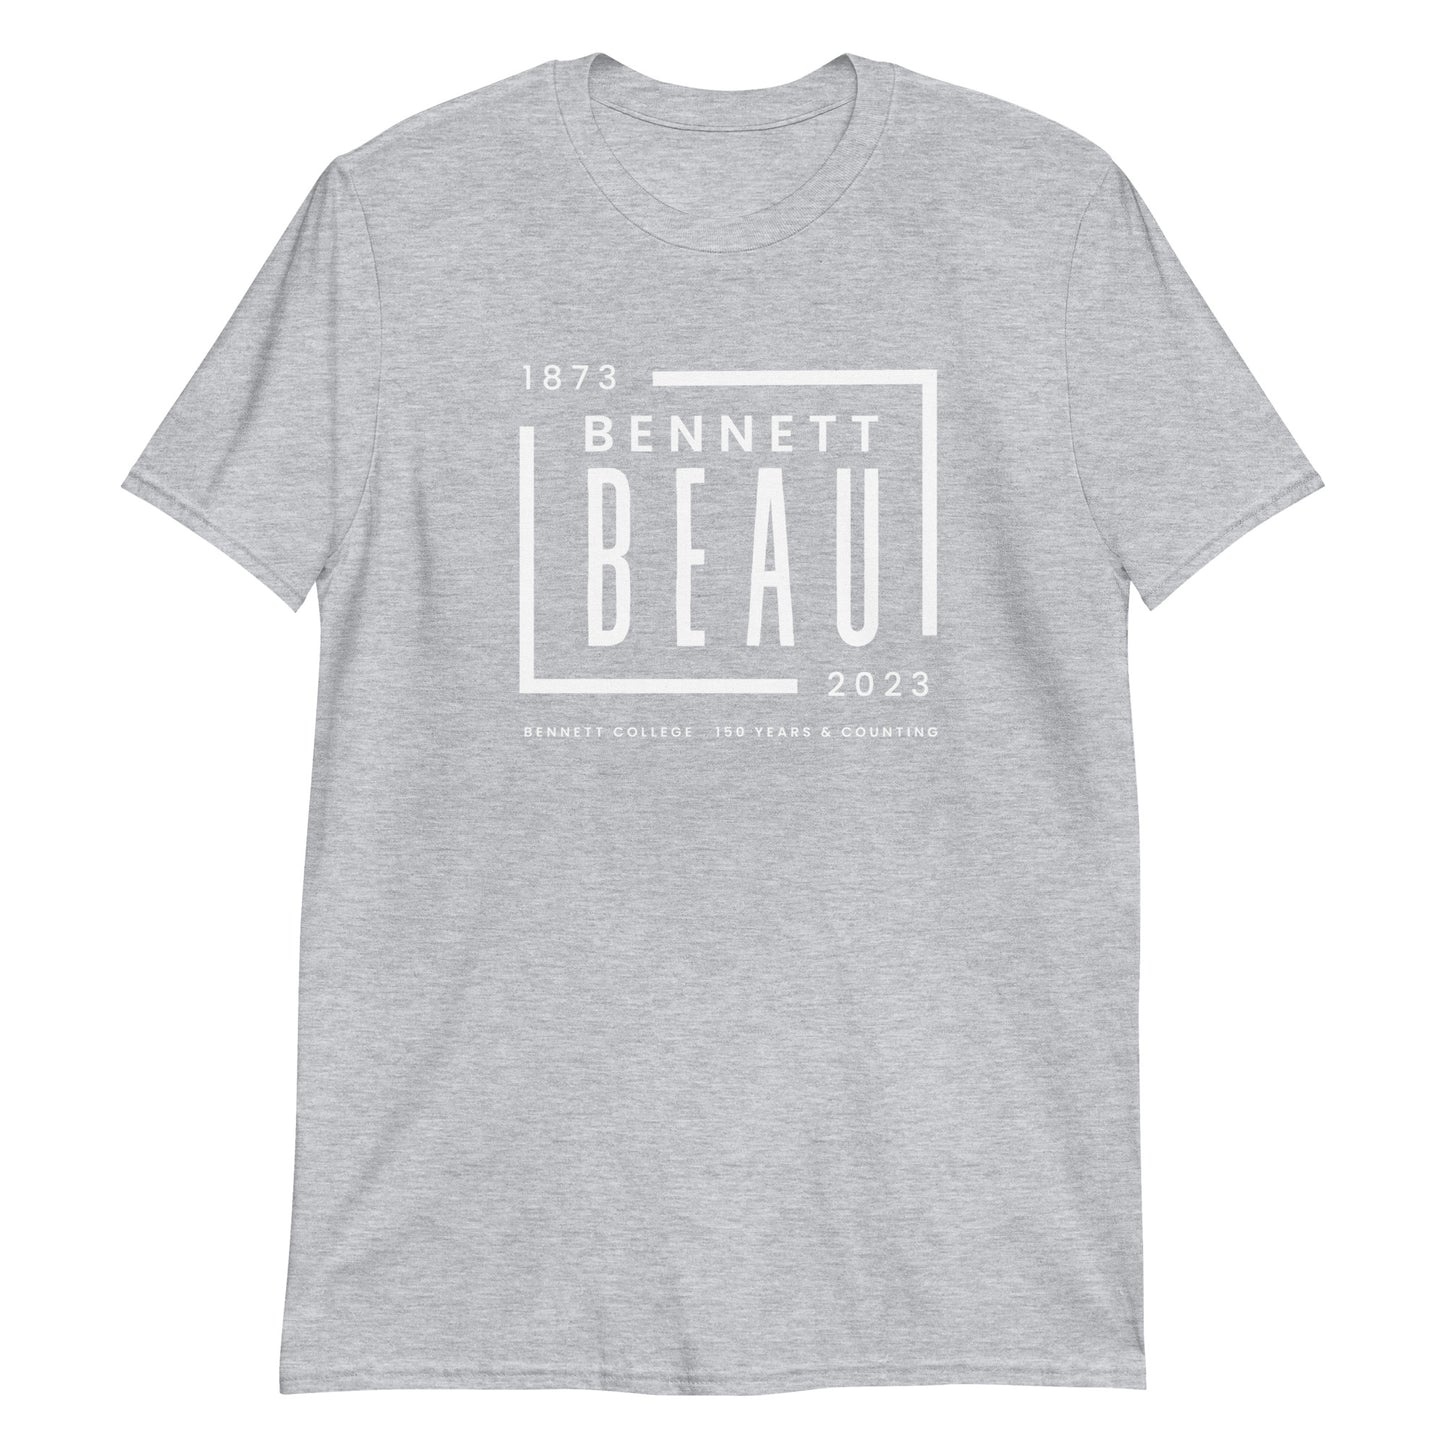 Bennett Beau Short-Sleeve Unisex T-Shirt